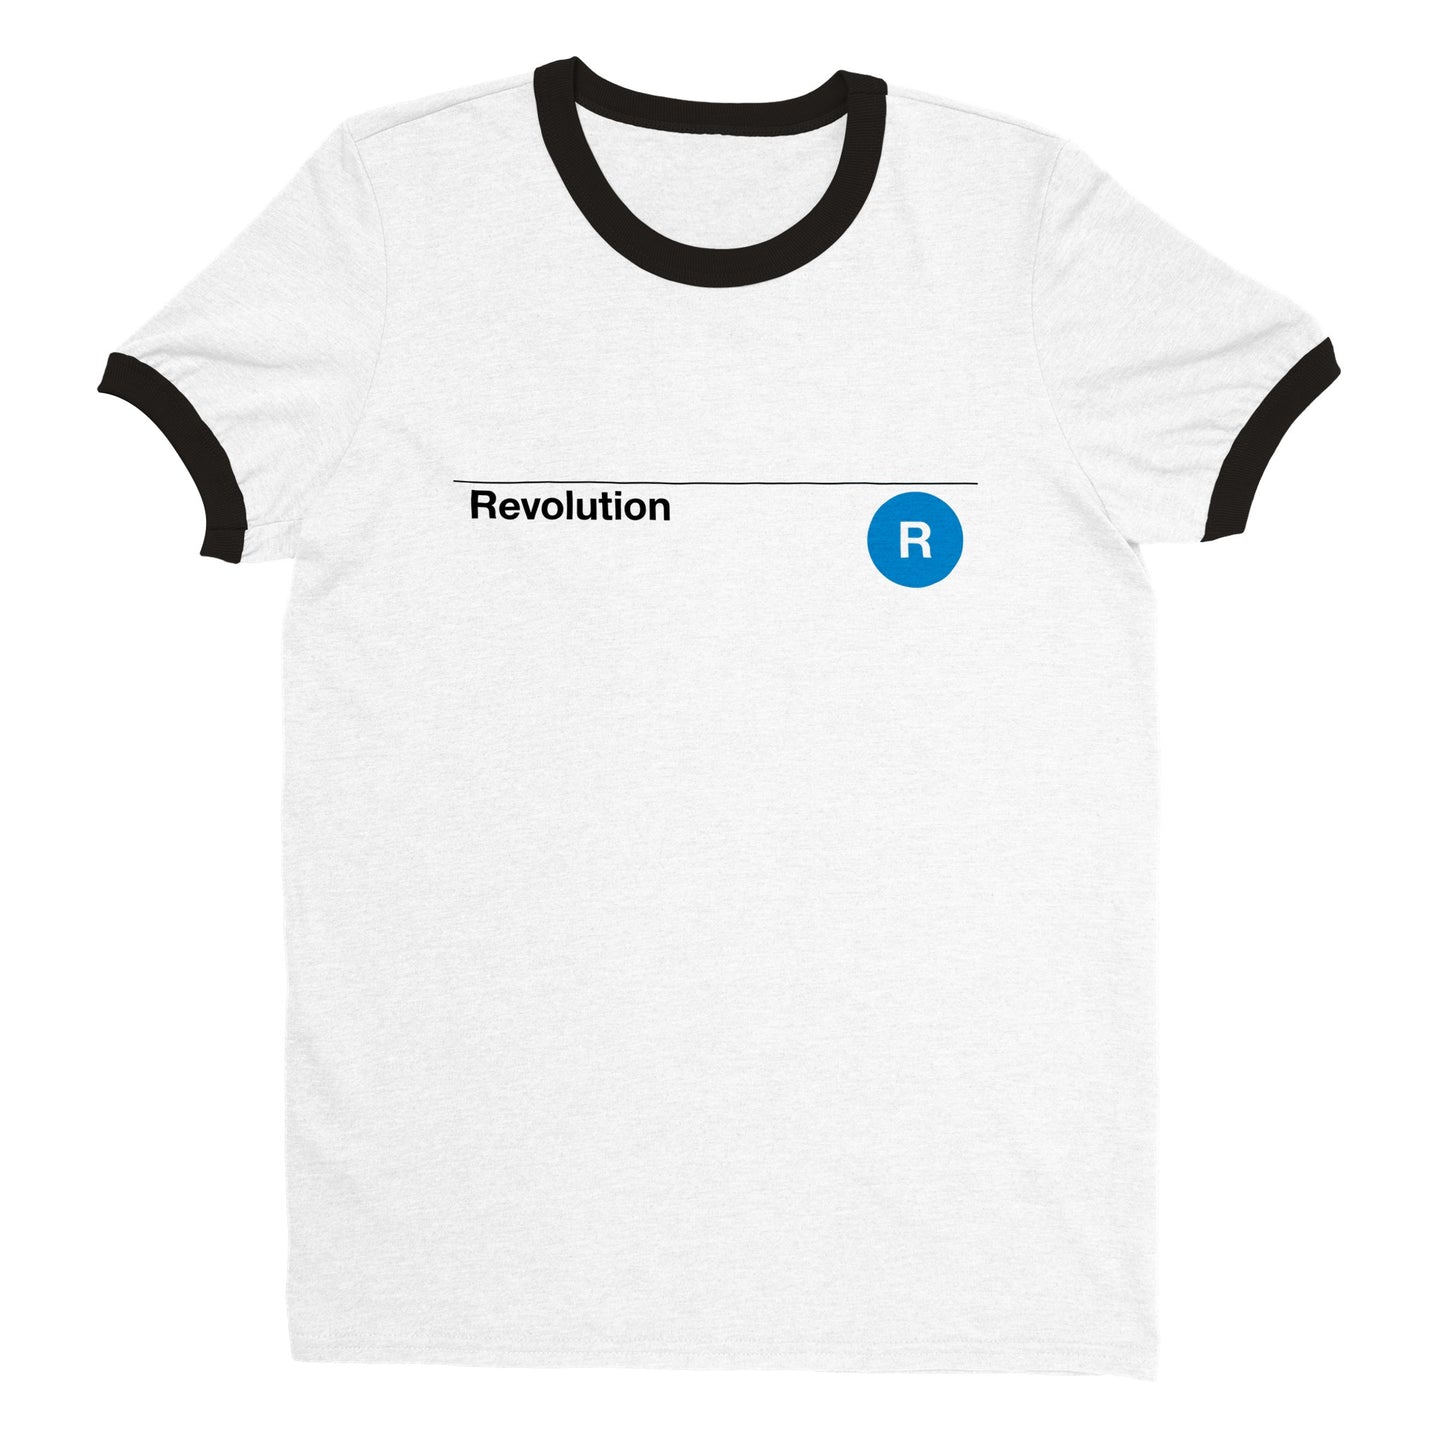 Revolution . T-shirt Unisex Ringer